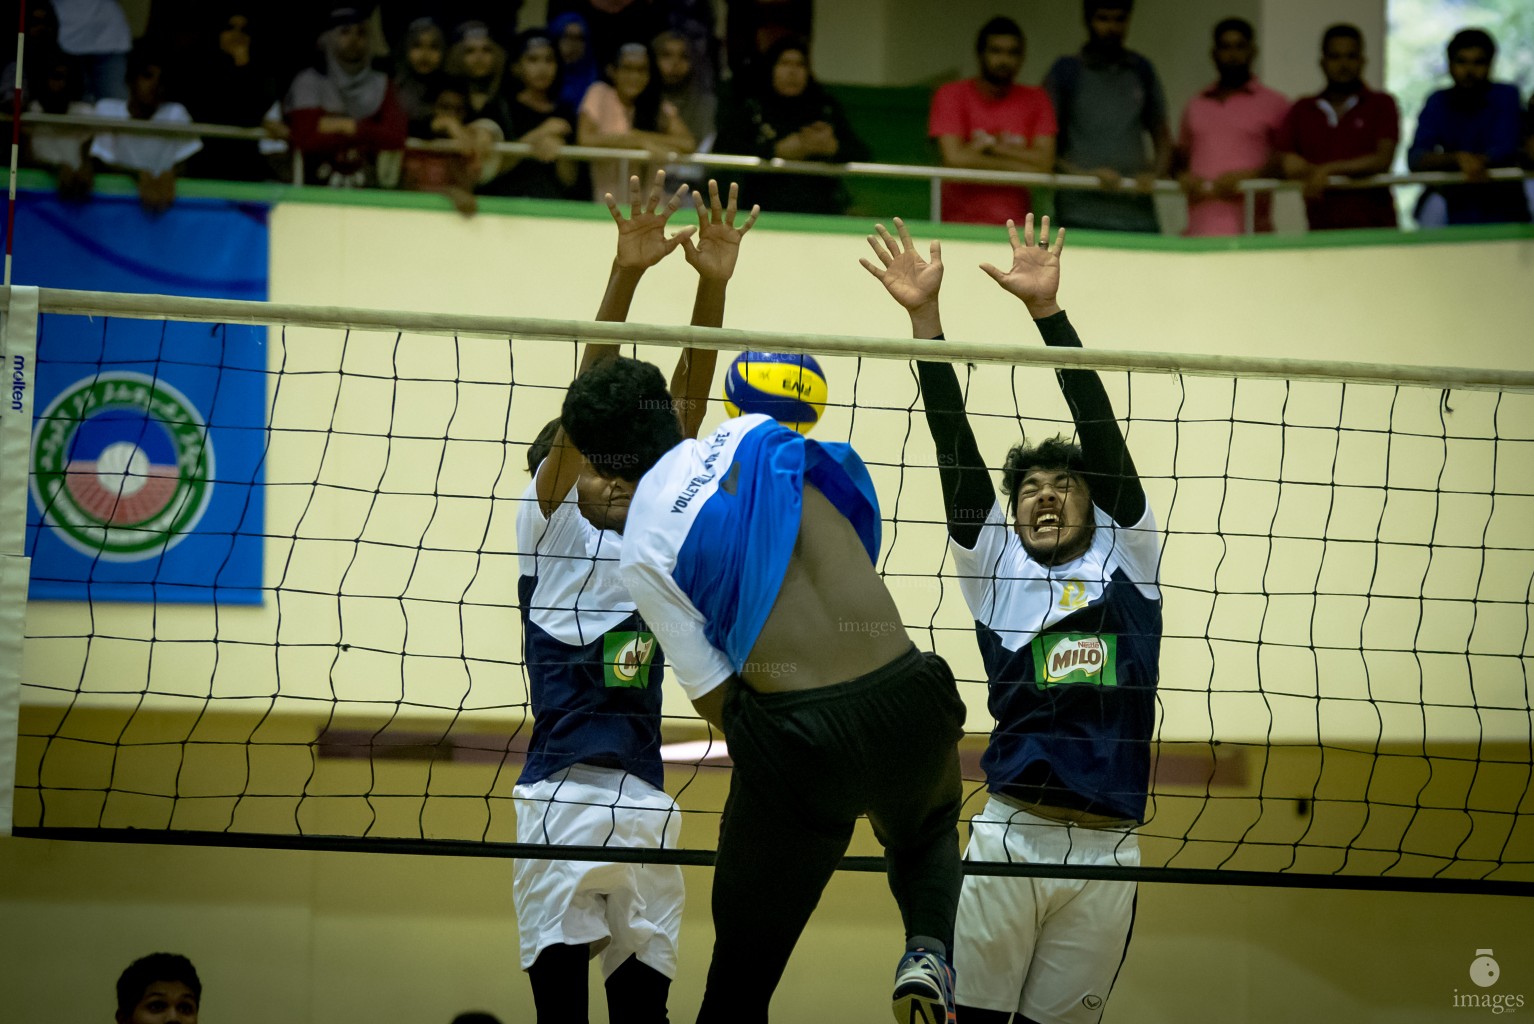 MILO Interschool Volleyball Tournament 2018 (Day 3)